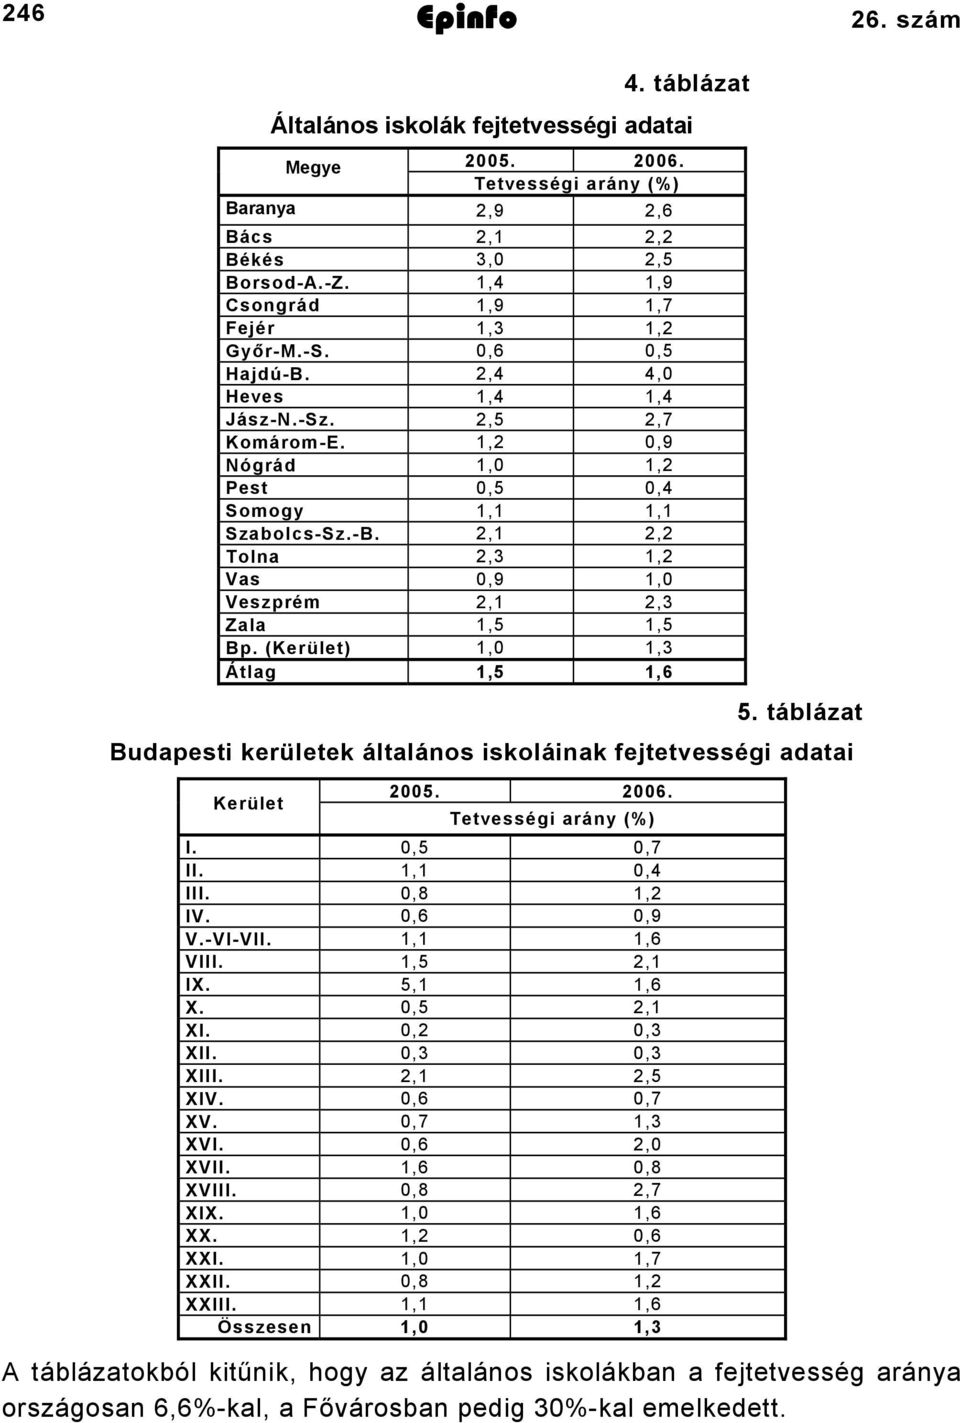 (Kerület) 1,0 1,3 Átlag 1,5 1,6 5. táblázat Budapesti kerületek általános iskoláinak fejtetvességi adatai Kerület 2005. 2006. Tetvességi arány (%) I. 0,5 0,7 II. 1,1 0,4 III. 0,8 1,2 IV. 0,6 0,9 V.